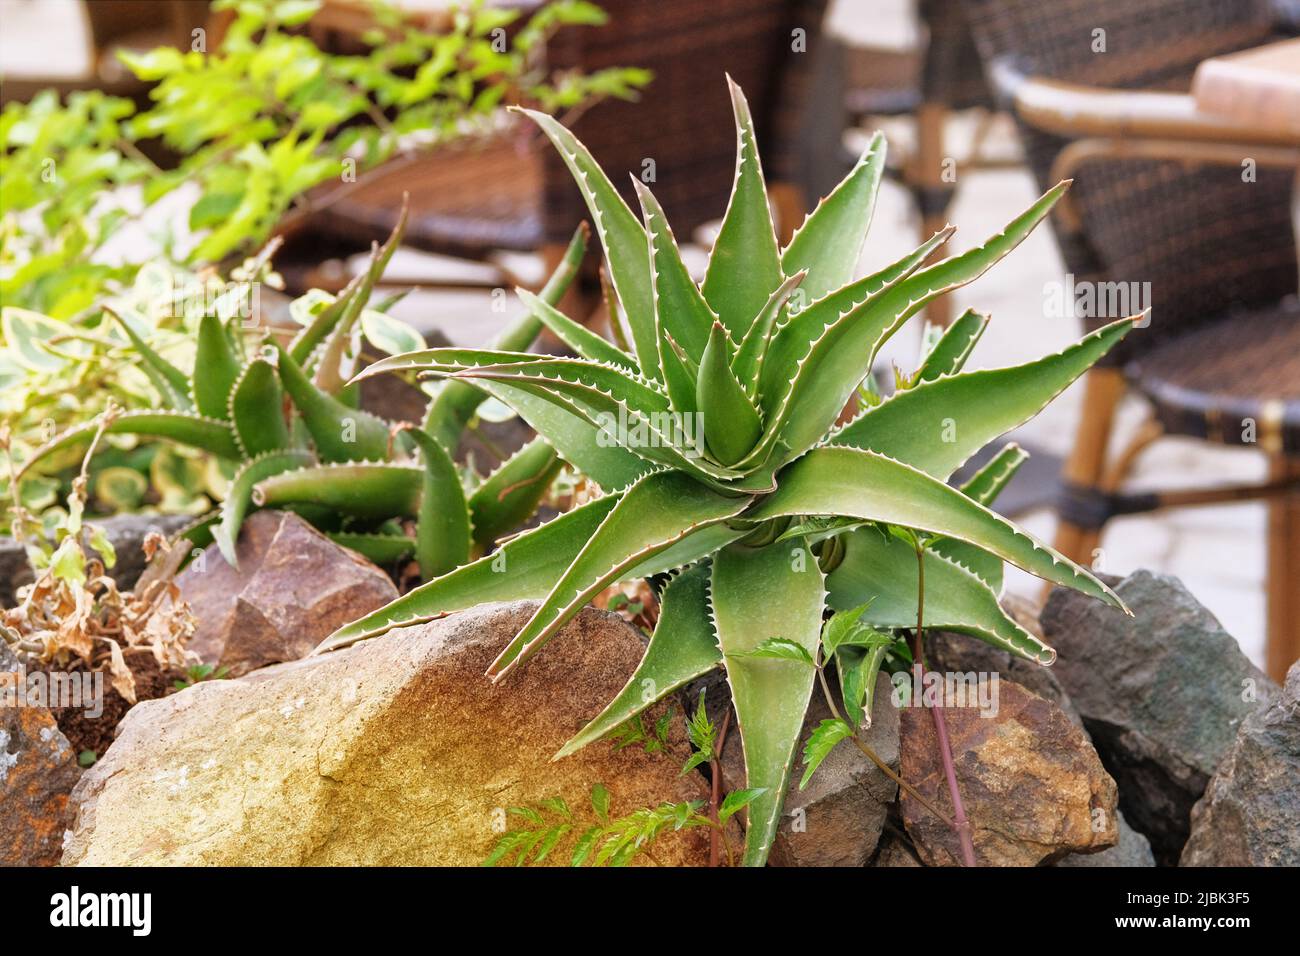 Aloe crece en una casa verde. Planta suculenta, con una roseta de hojas carnosas dentadas y flores tubulares o en forma de campana en tallos largos. Foto de stock